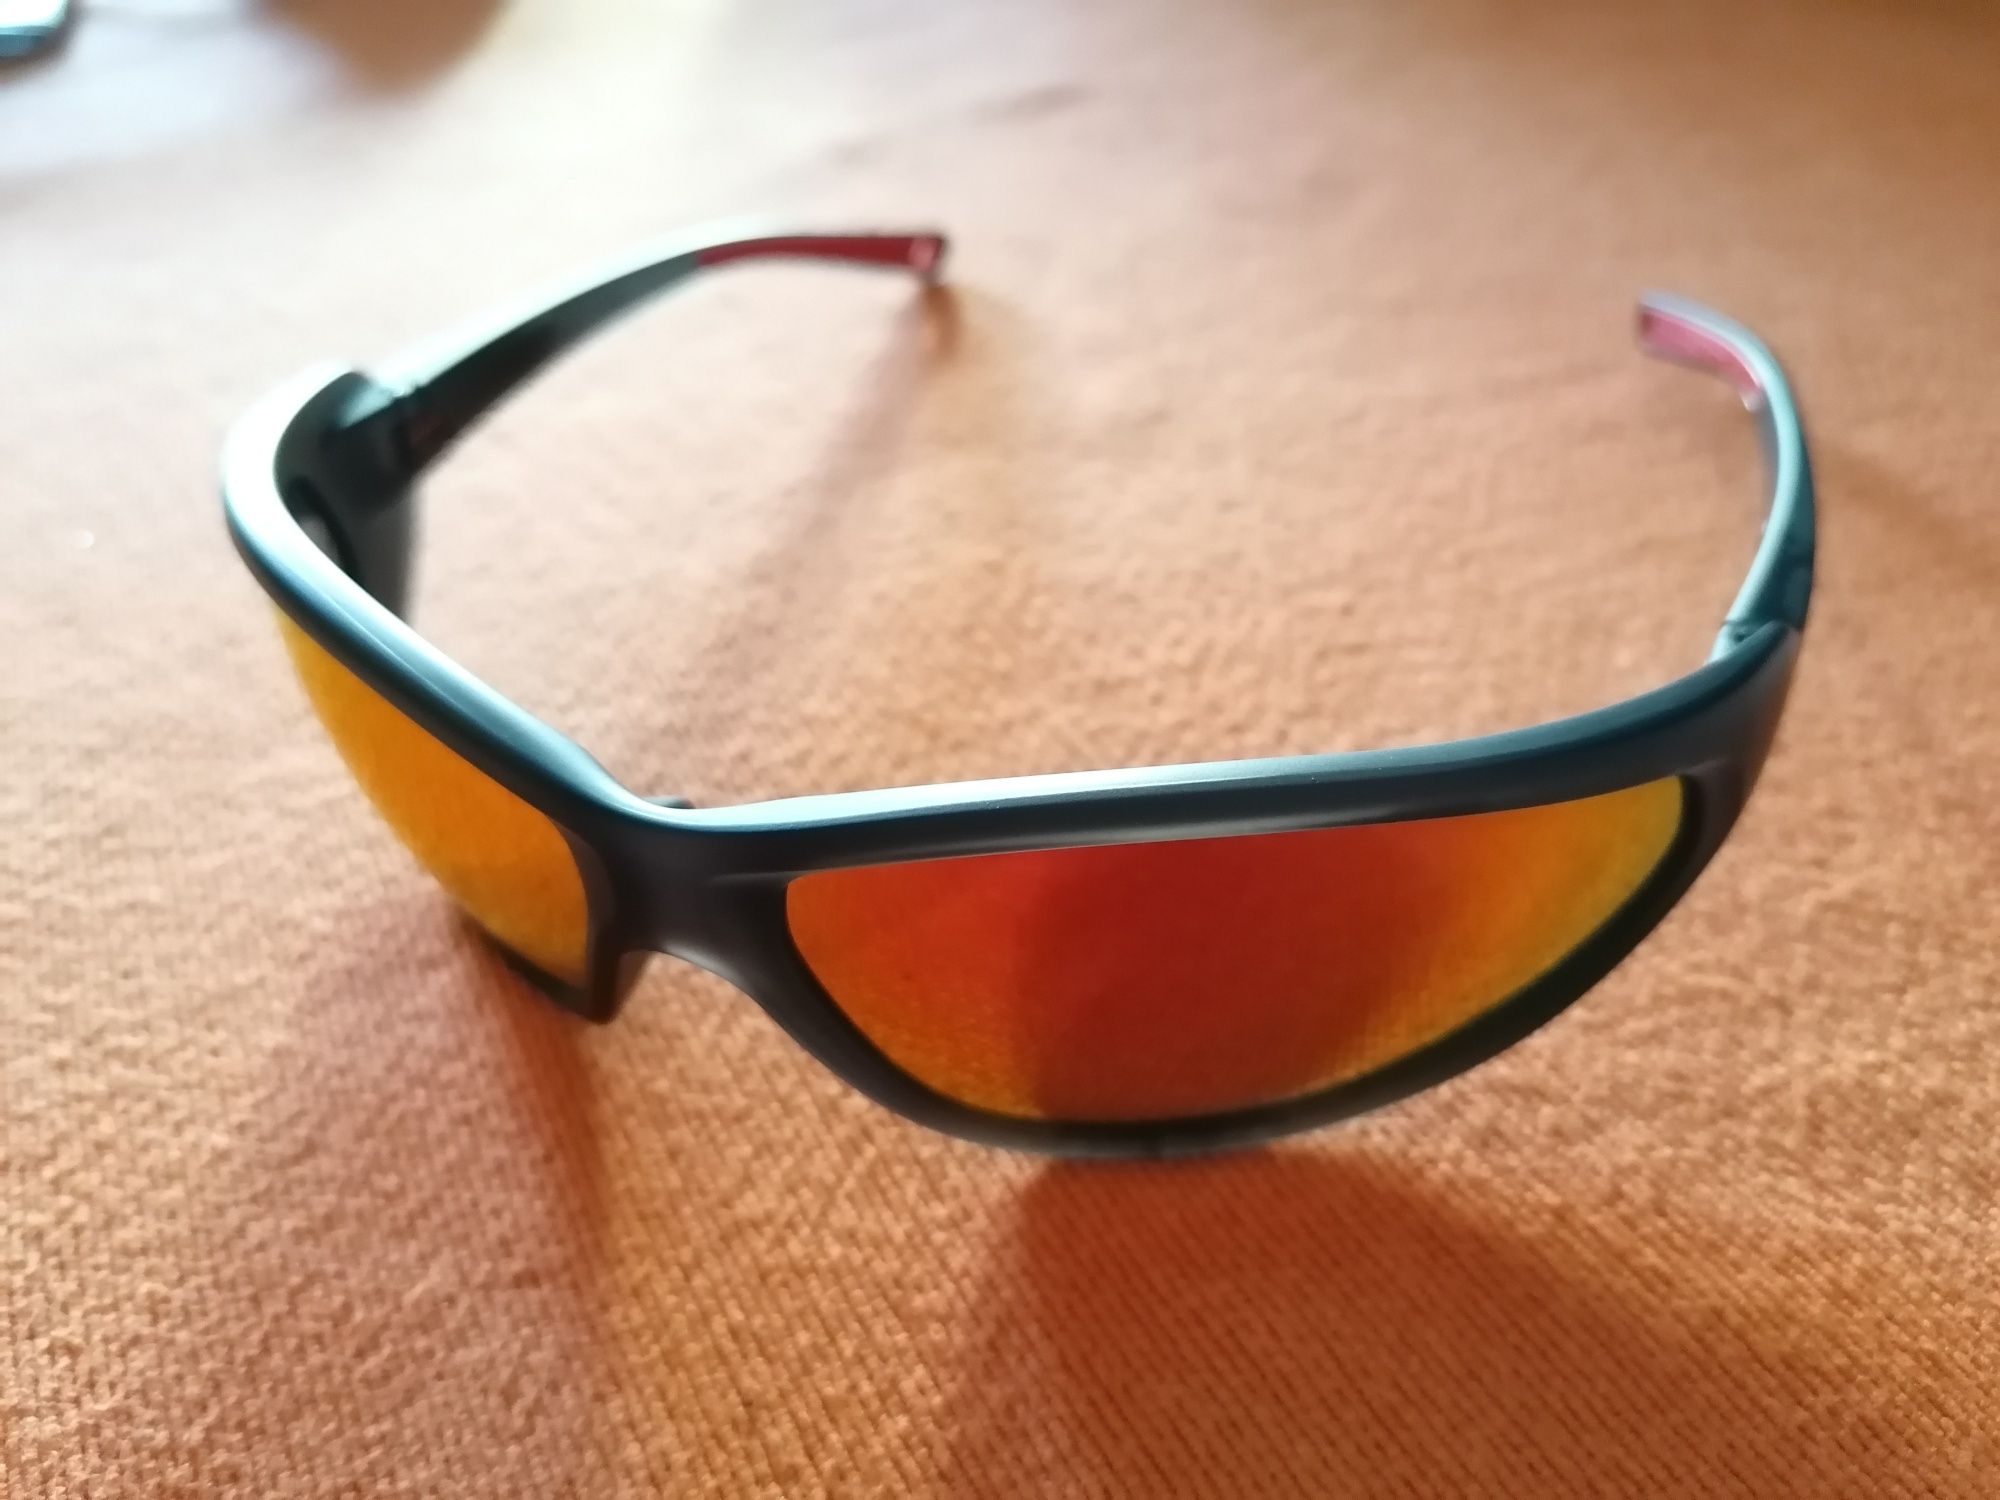 Óculos de sol caminhada / montanha - NOVOS